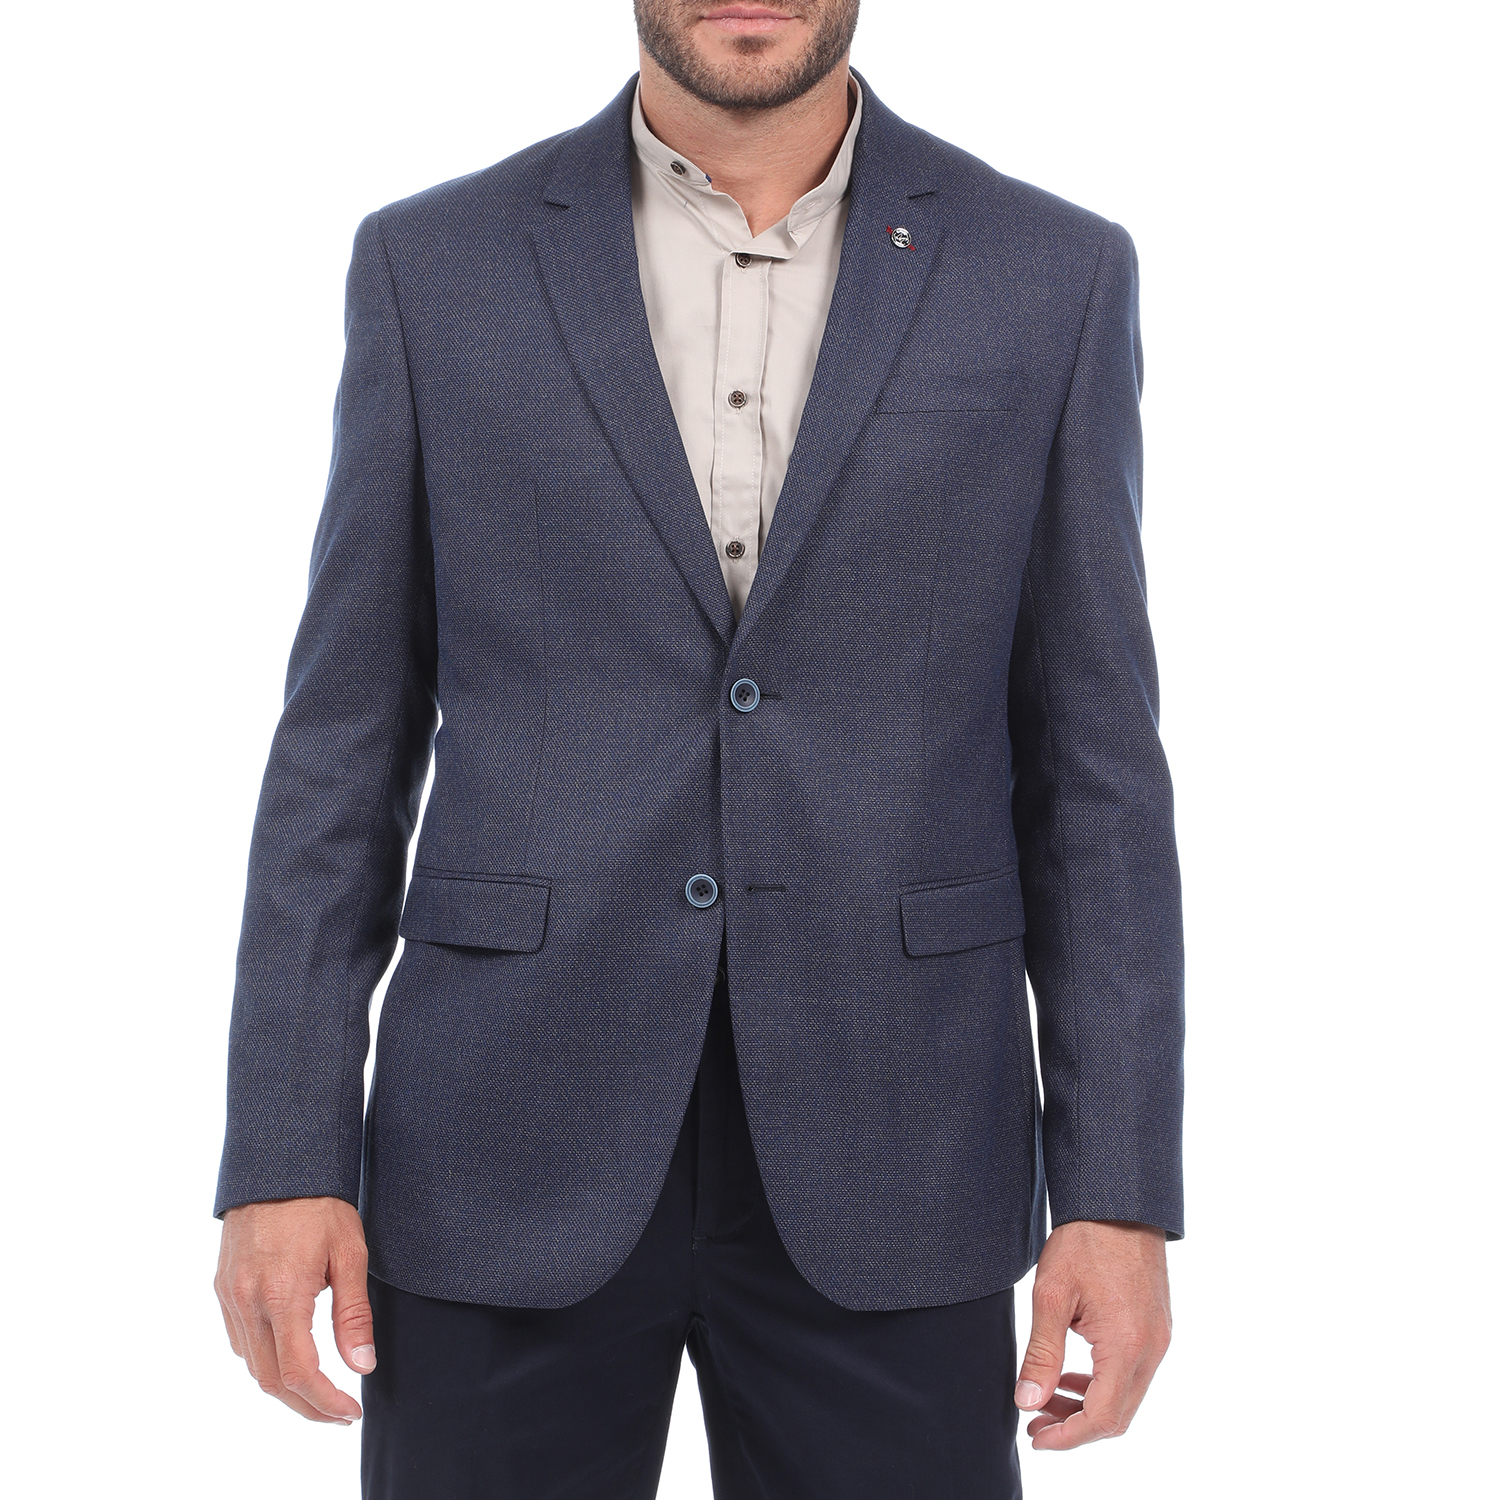 Ανδρικά/Ρούχα/Πανωφόρια/Σακάκια MARTIN & CO - Ανδρικό σακάκι blazer MARTIN & CO CMFRT Stretch μπλε